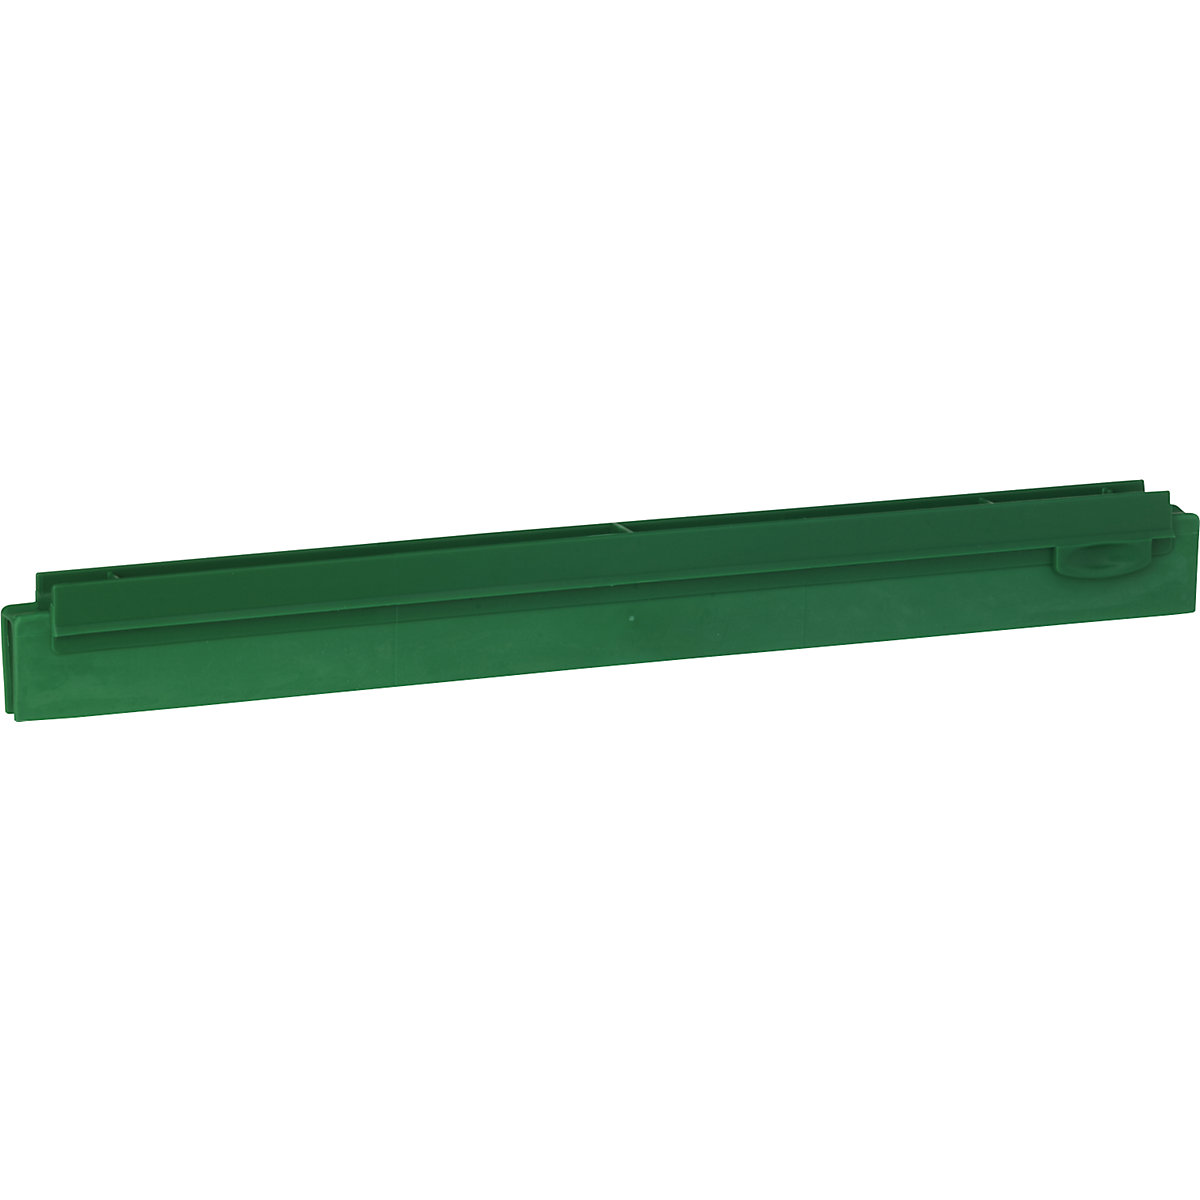 Zamjenska kaseta, higijenska – Vikan, dužina 400 mm, pak. 10 kom., u zelenoj boji